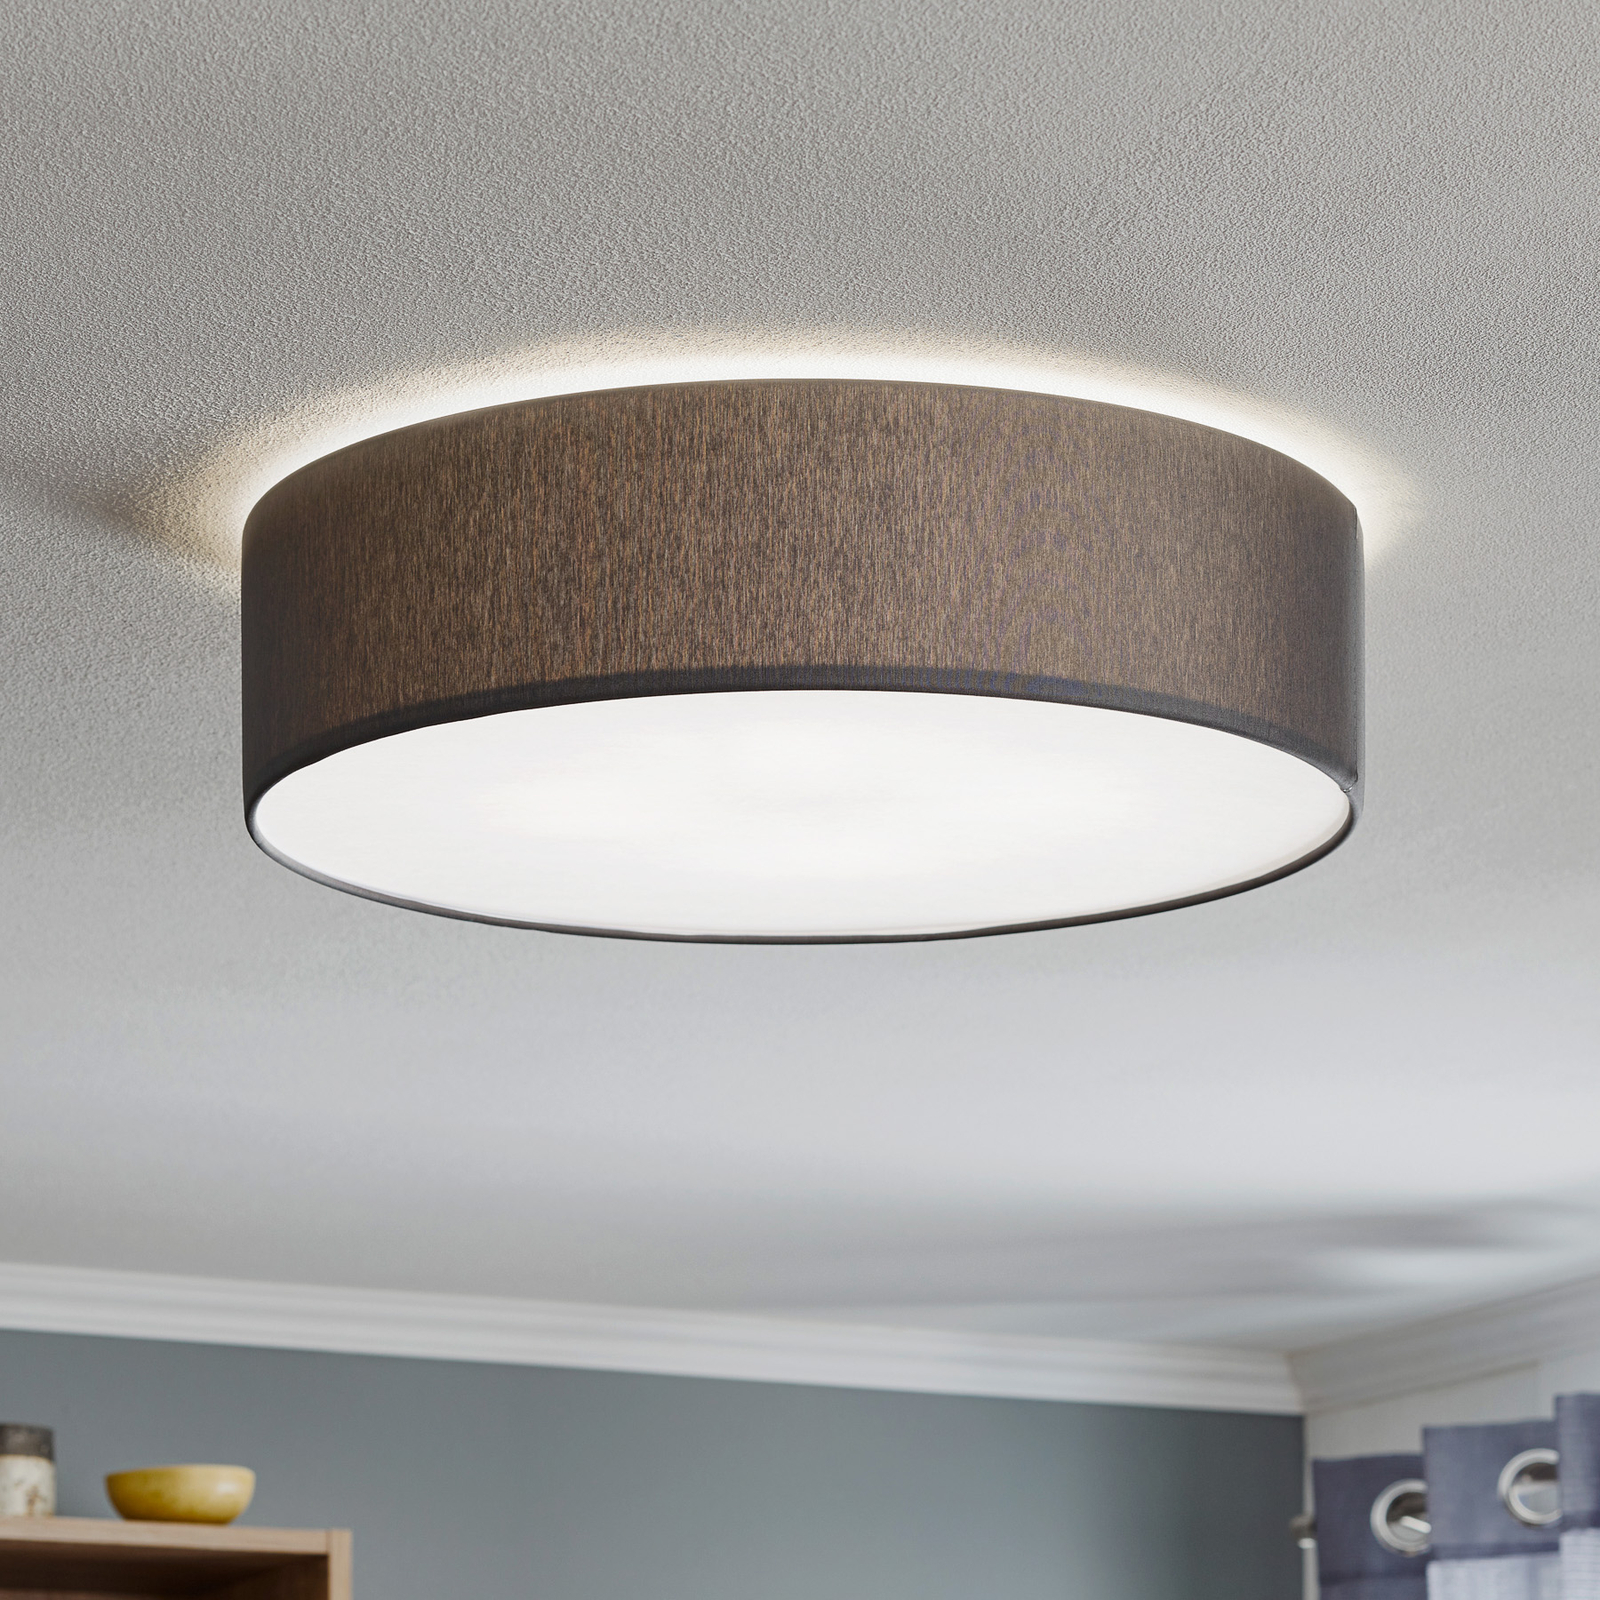 Rondo ceiling light, grey Ø 45cm